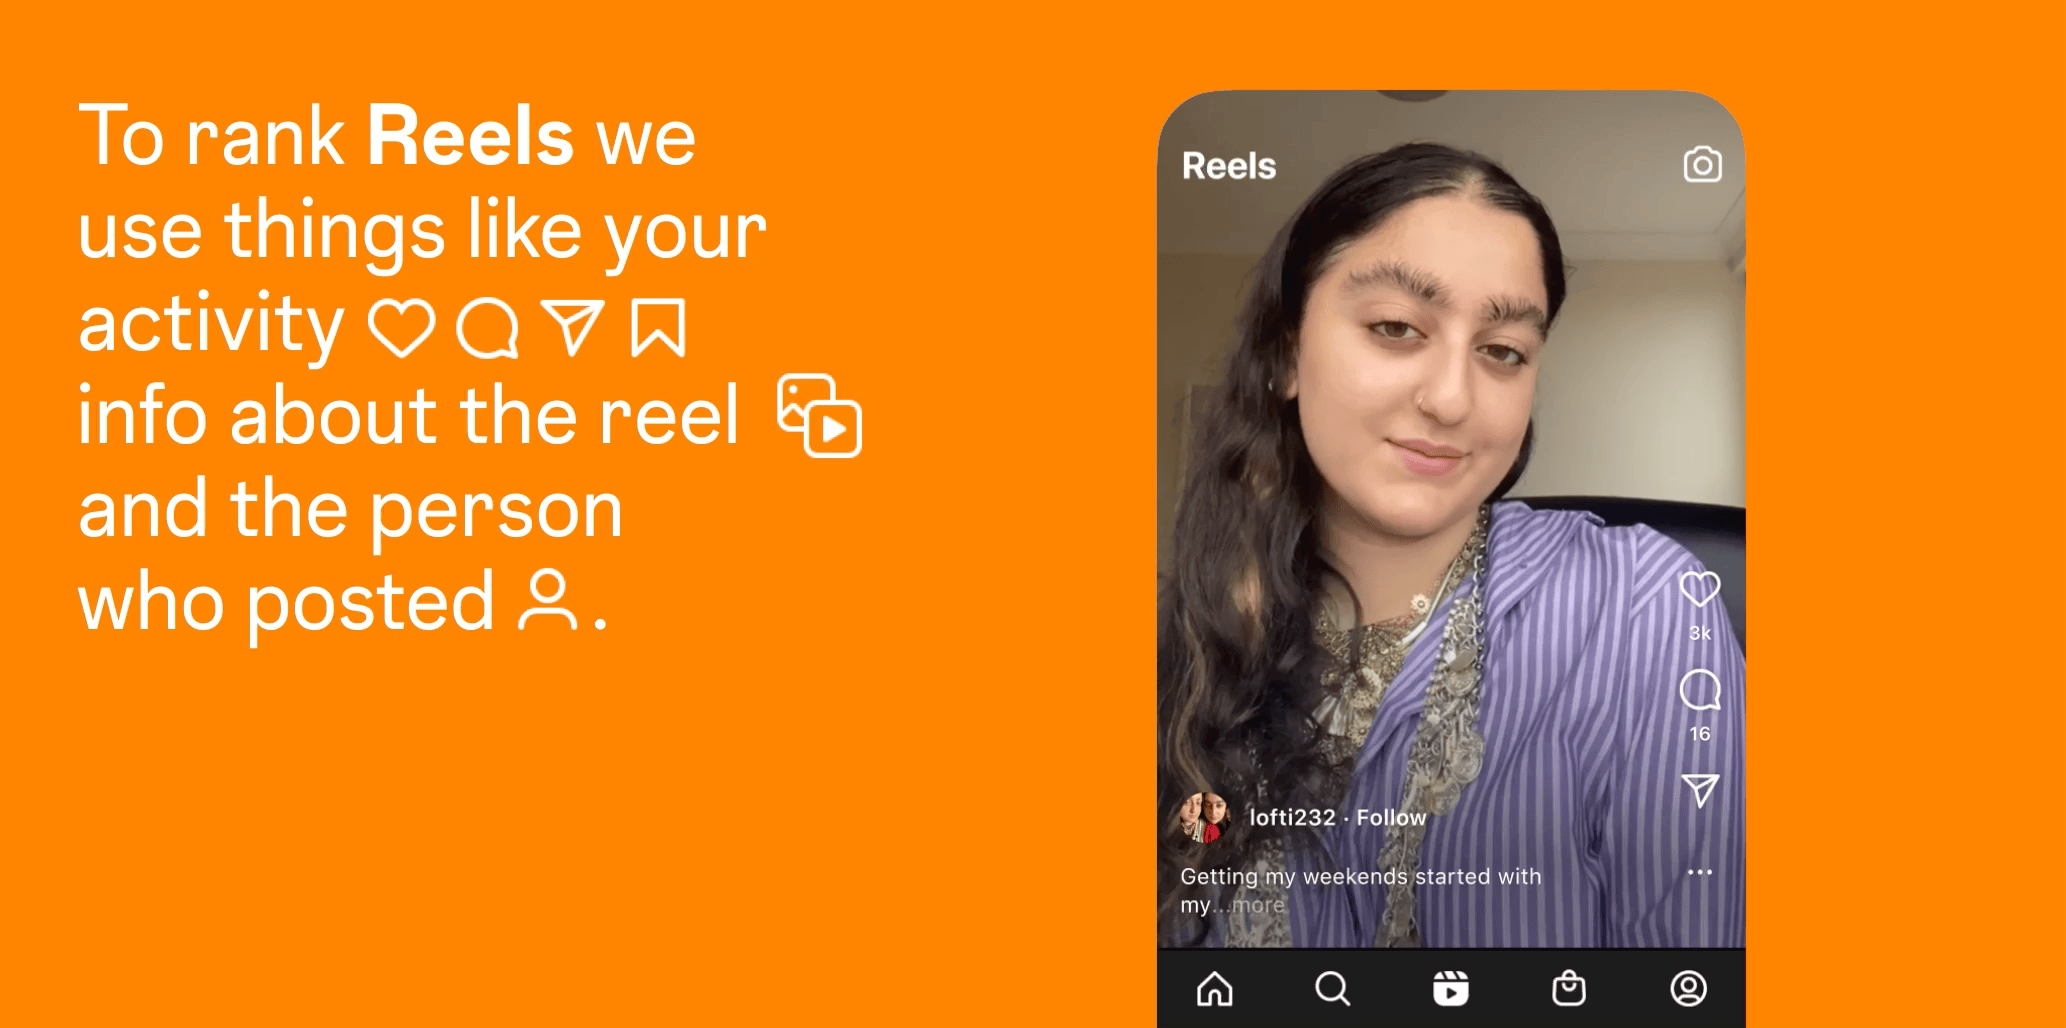 Instagram explica cómo funciona su algoritmo para recomendar contenido en Reels. (Instagram)